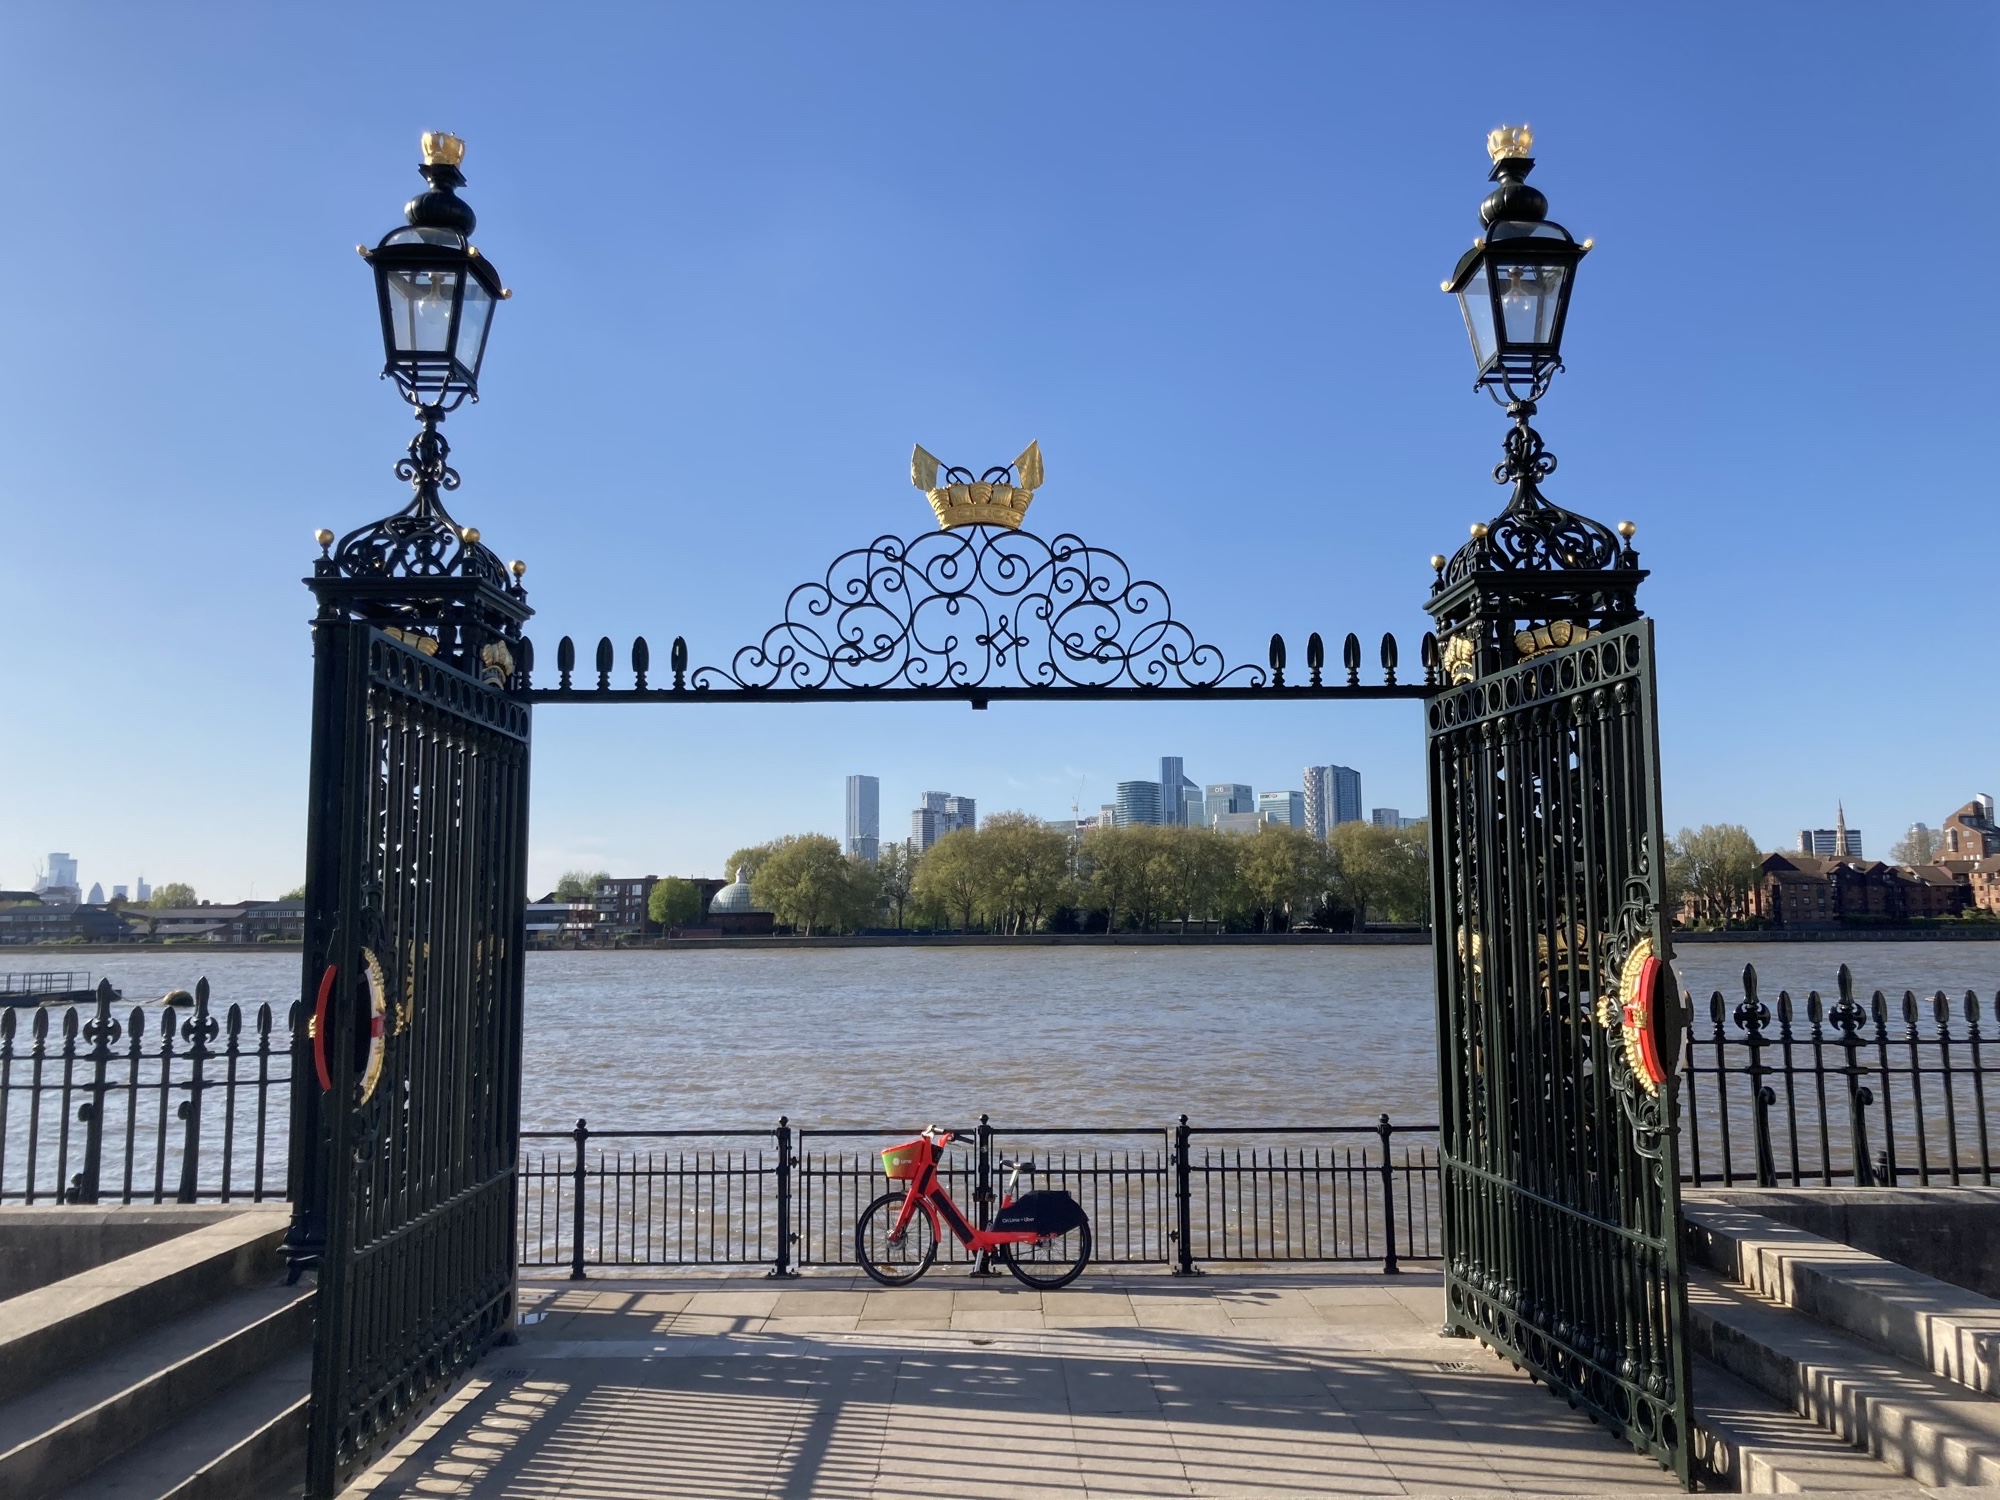 Blick auf die Themse und dahinter die Skyline von Zentrallondon durch ein geöffnetes schmiedeeisernes Tor, das links und rechts von imposanten Lampen und mittig von goldenen Schiffen und Flaggen geschmückt wird, auf dem Uferweg hinter dem Tor steht ein rotes Leihrad